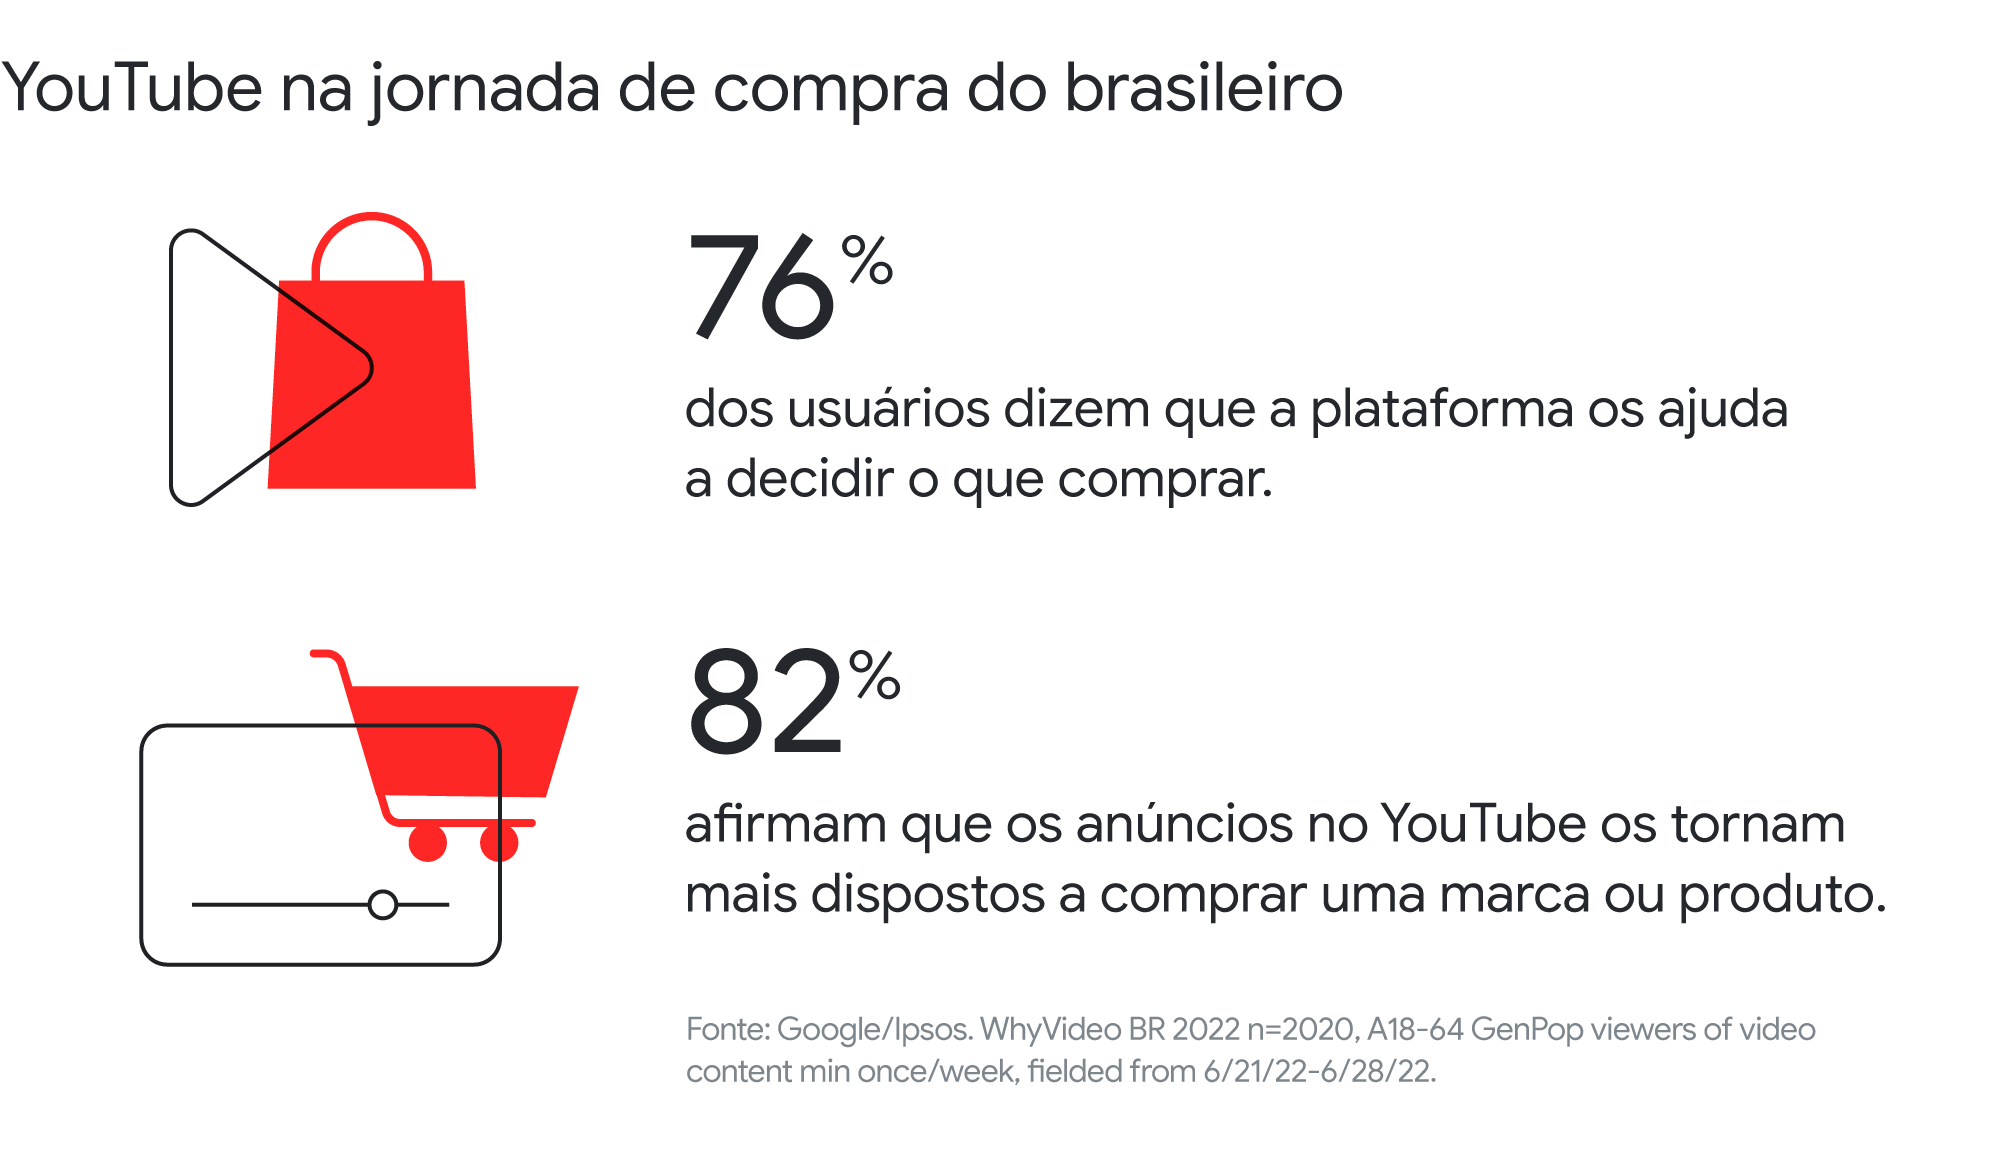 YouTube na jornada de compra do brasileiro. 76% dos usuários dizem que a plataforma os ajuda a decidir o que comprar. 82% afirmam que os anúncios no YouTube os tornam mais dispostos a comprar uma marca ou produto.